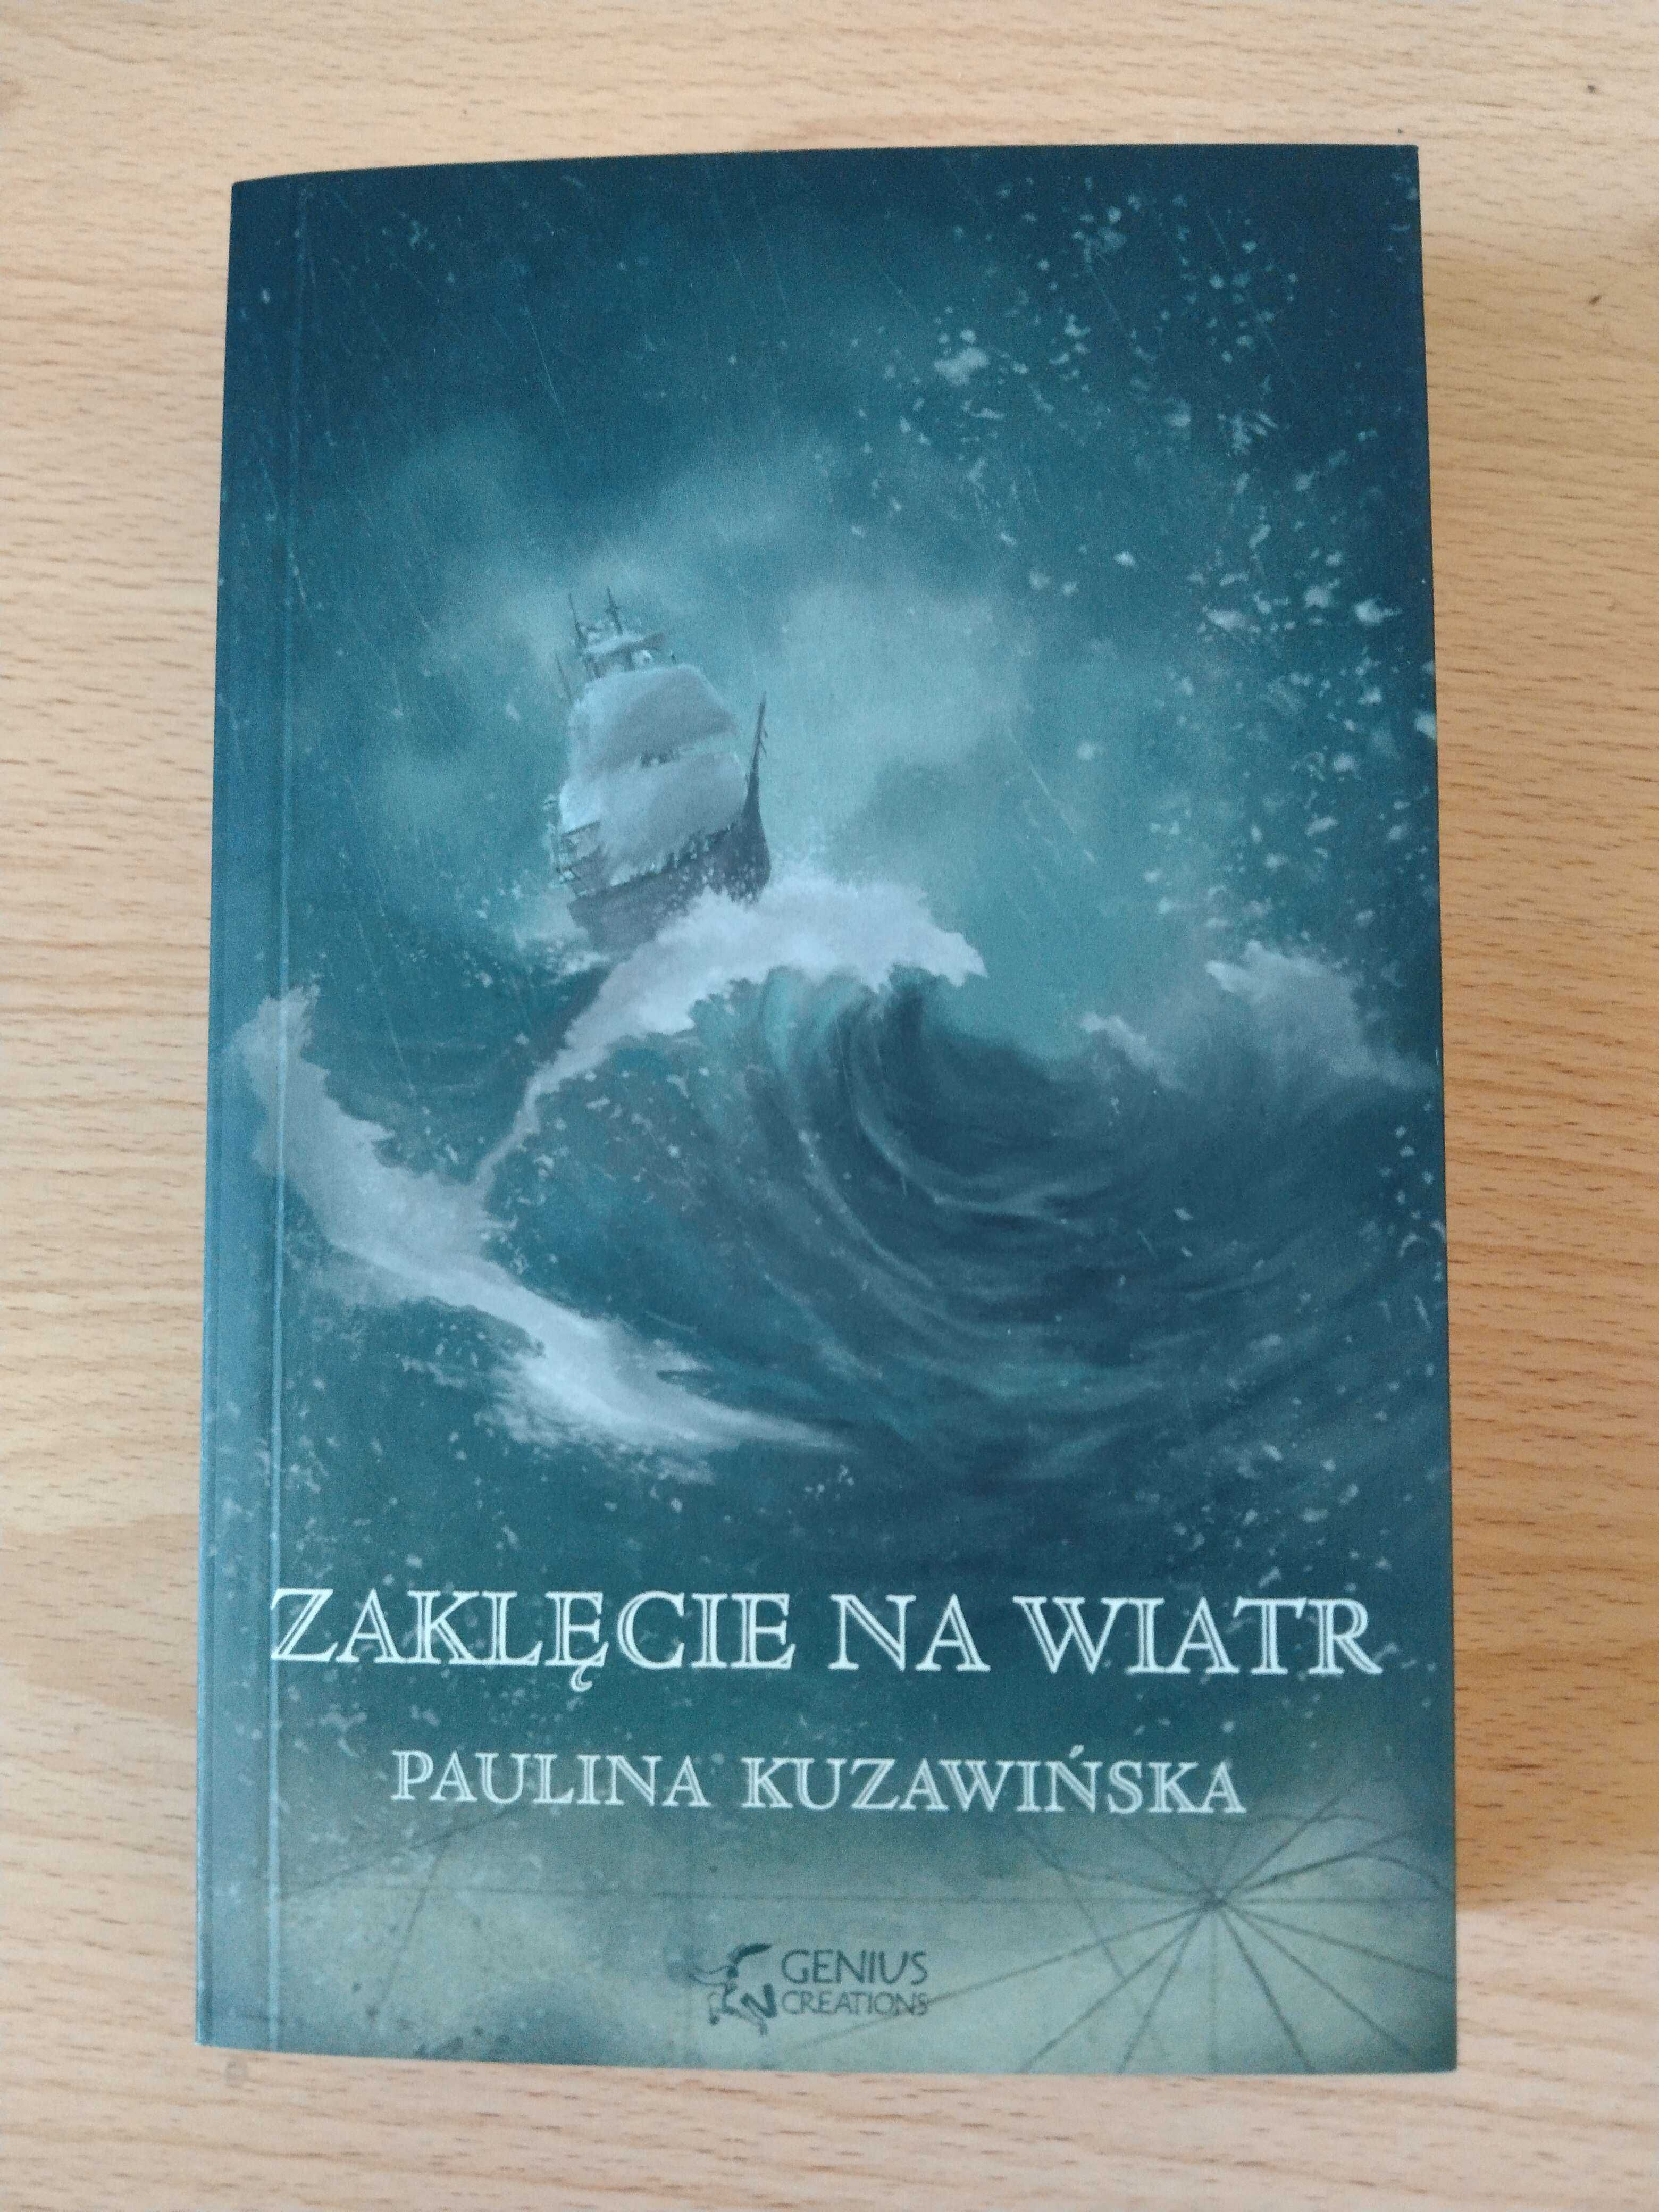 Zaklęcie na wiatr, Paulina Kuzawińska